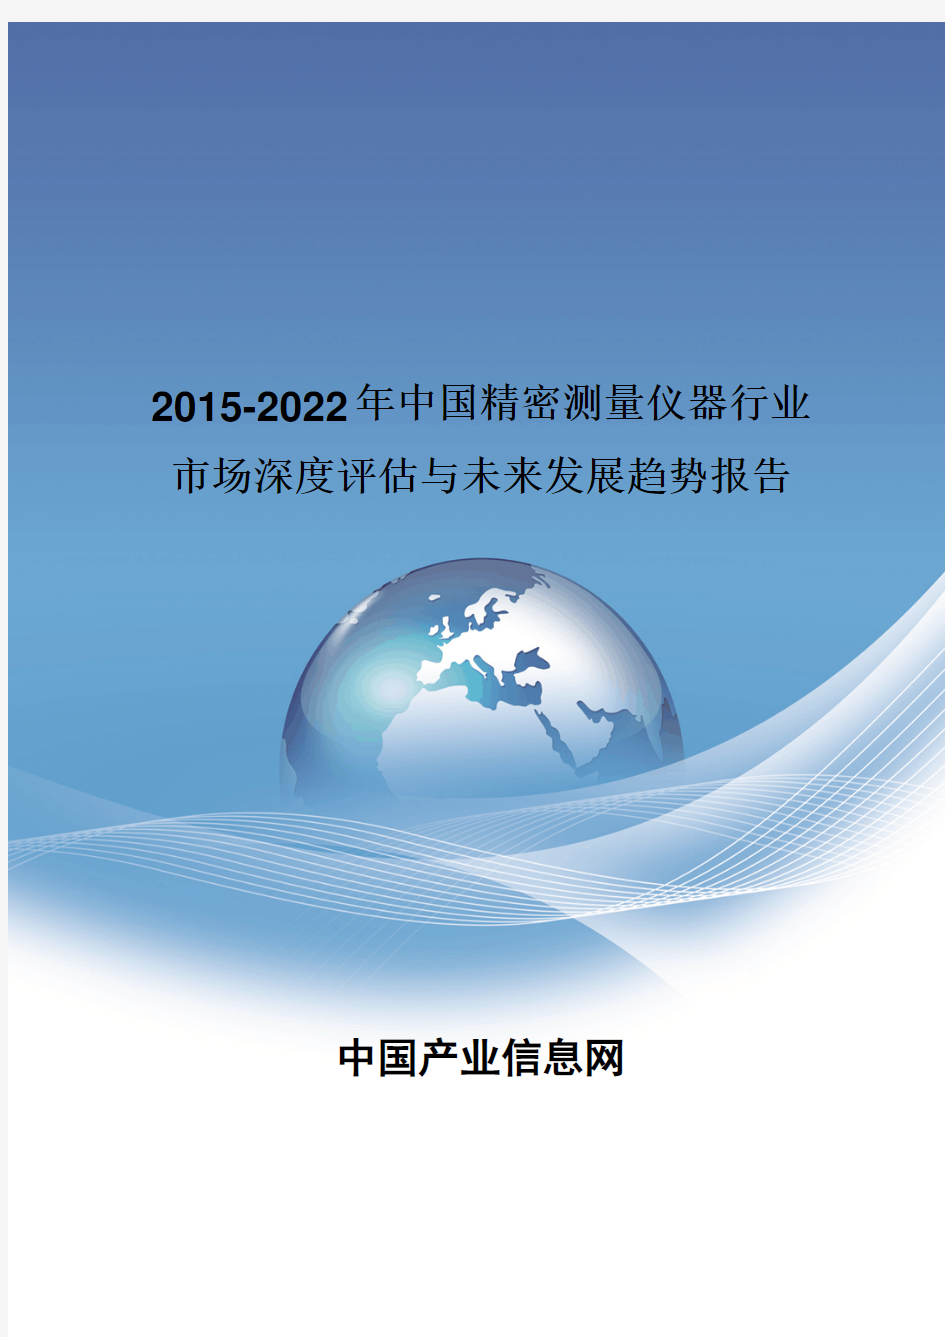 2015-2022年中国精密测量仪器行业市场深度评估报告